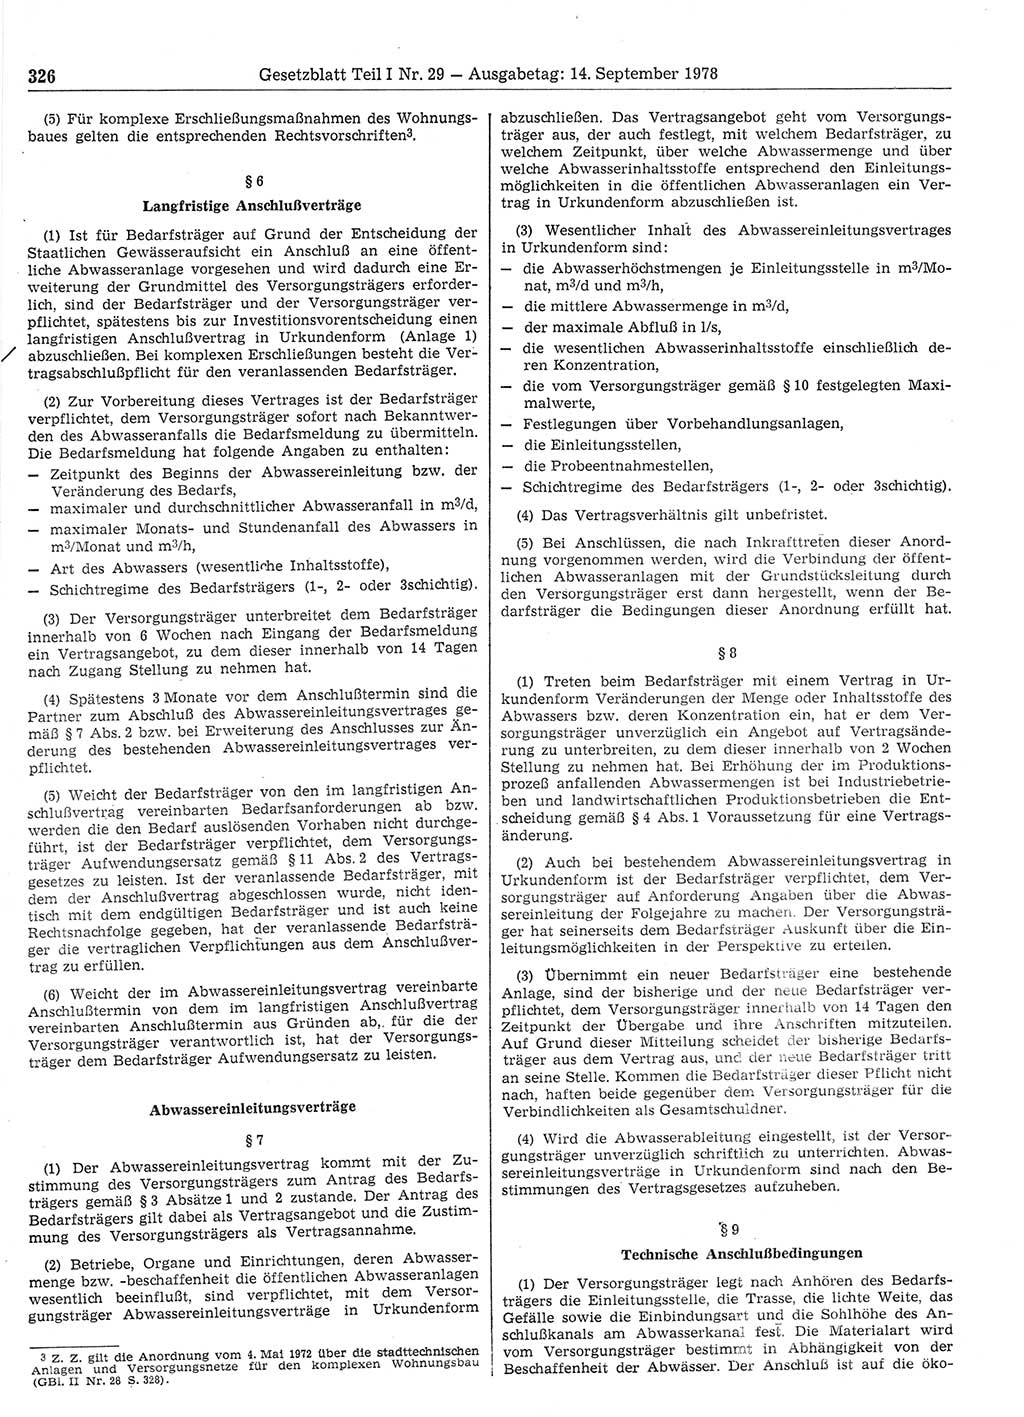 Gesetzblatt (GBl.) der Deutschen Demokratischen Republik (DDR) Teil Ⅰ 1978, Seite 326 (GBl. DDR Ⅰ 1978, S. 326)